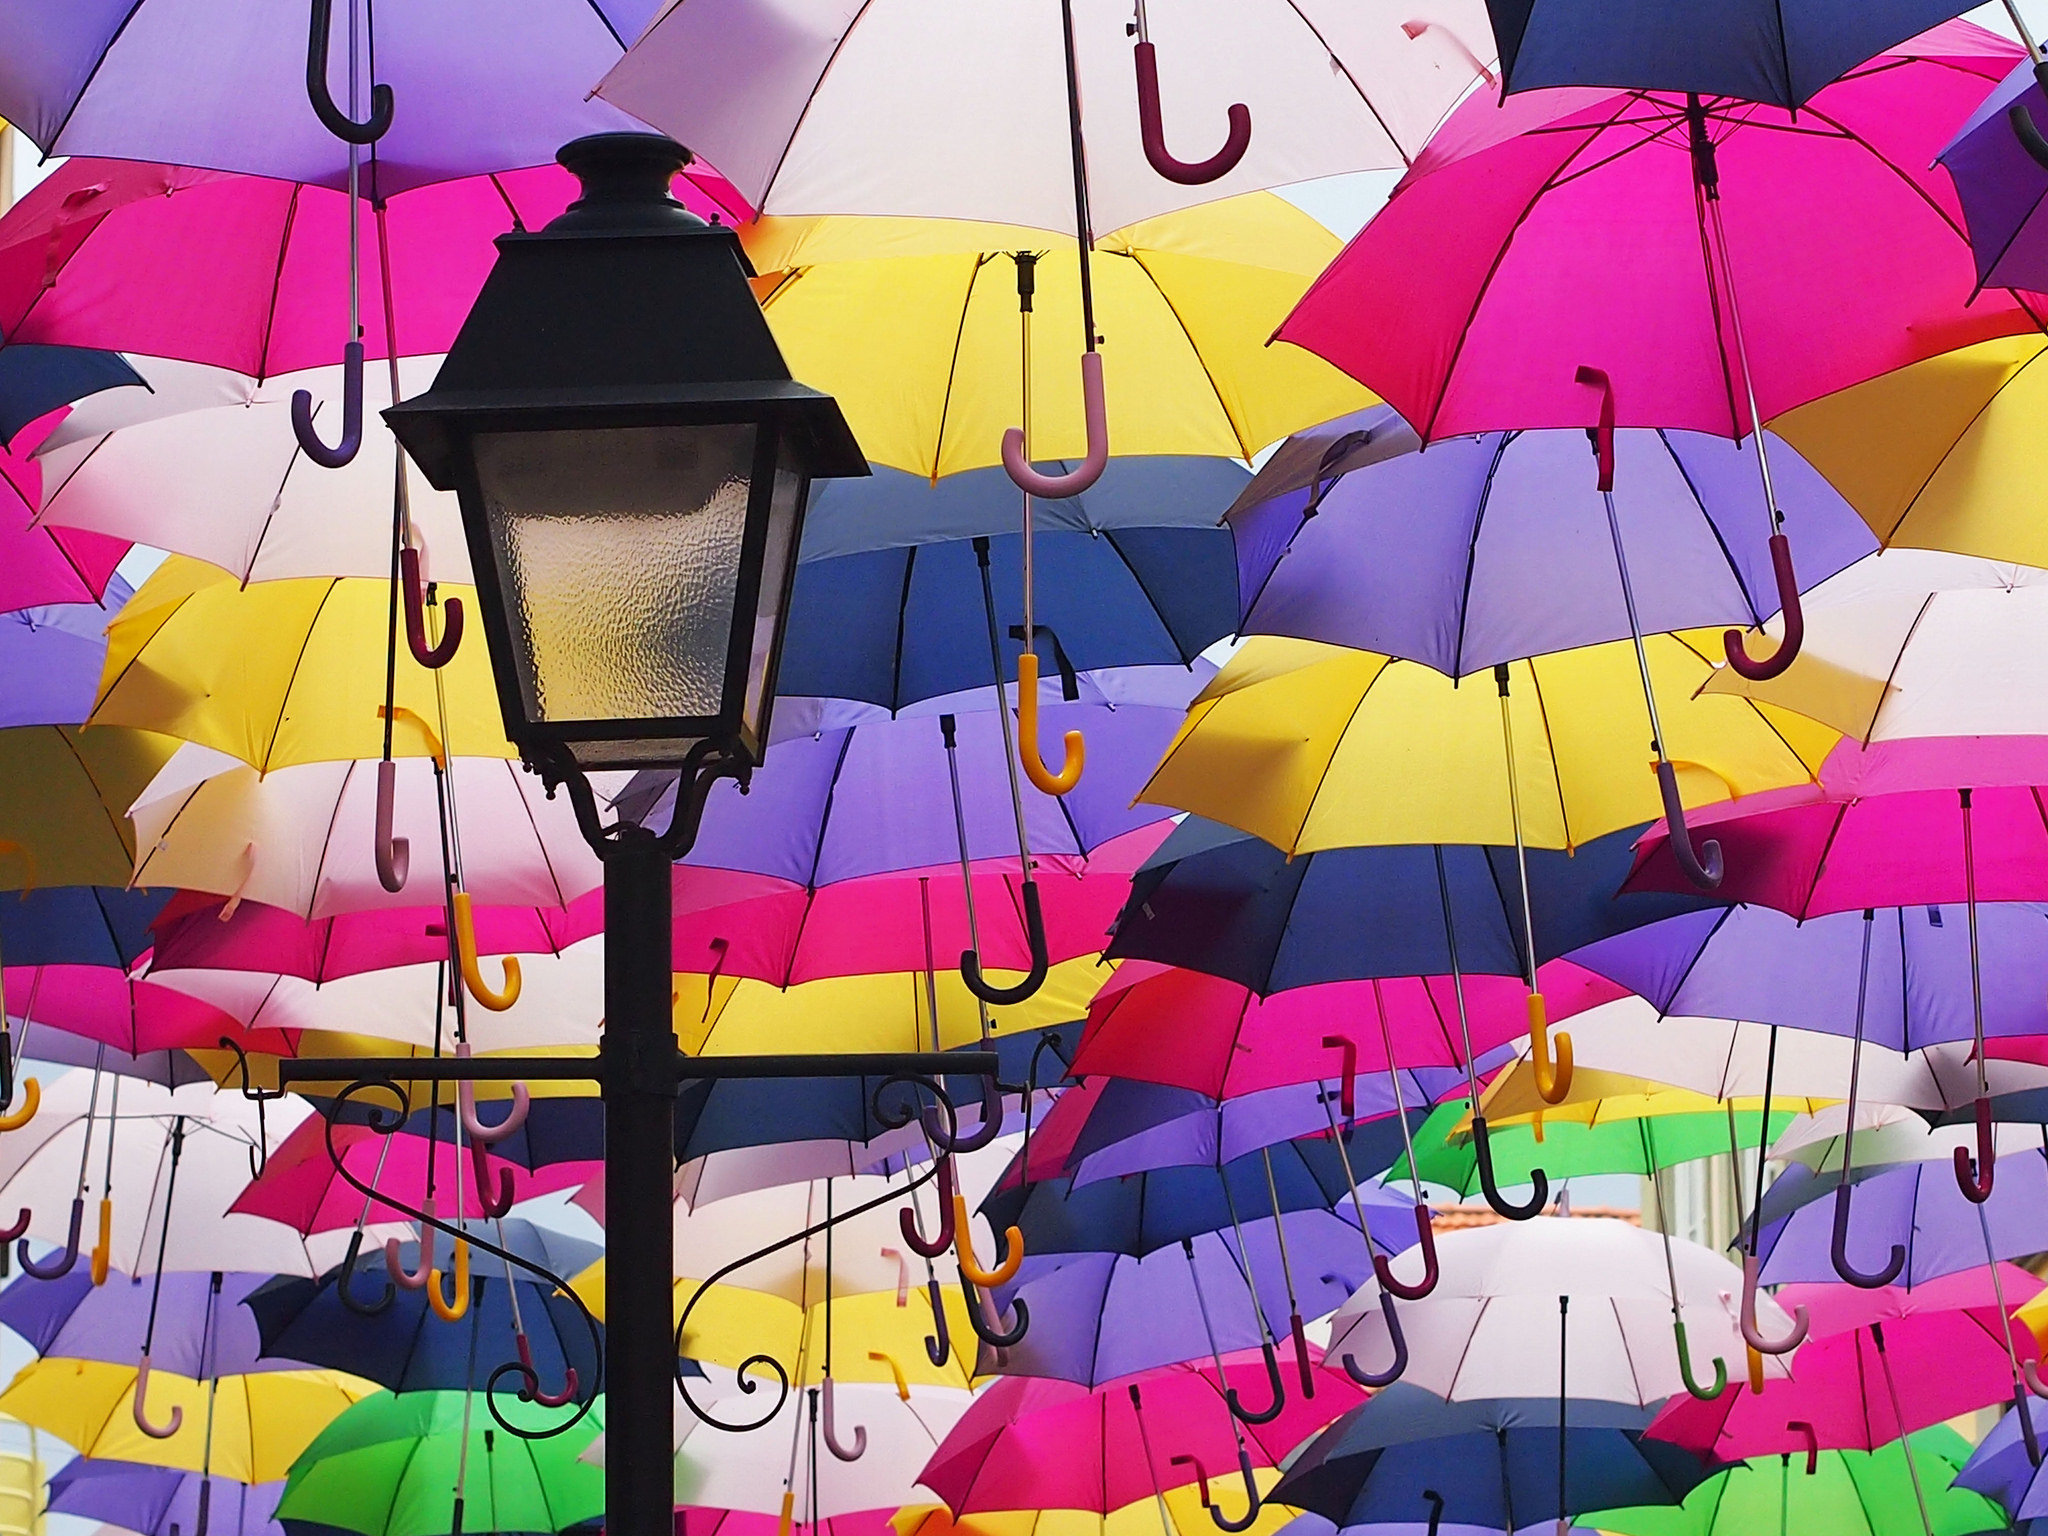 You take an umbrella today. Улица парящих зонтиков, Агеда, Португалия. Разноцветные зонтики. Разноцветный зонт. Зонтики яркие.